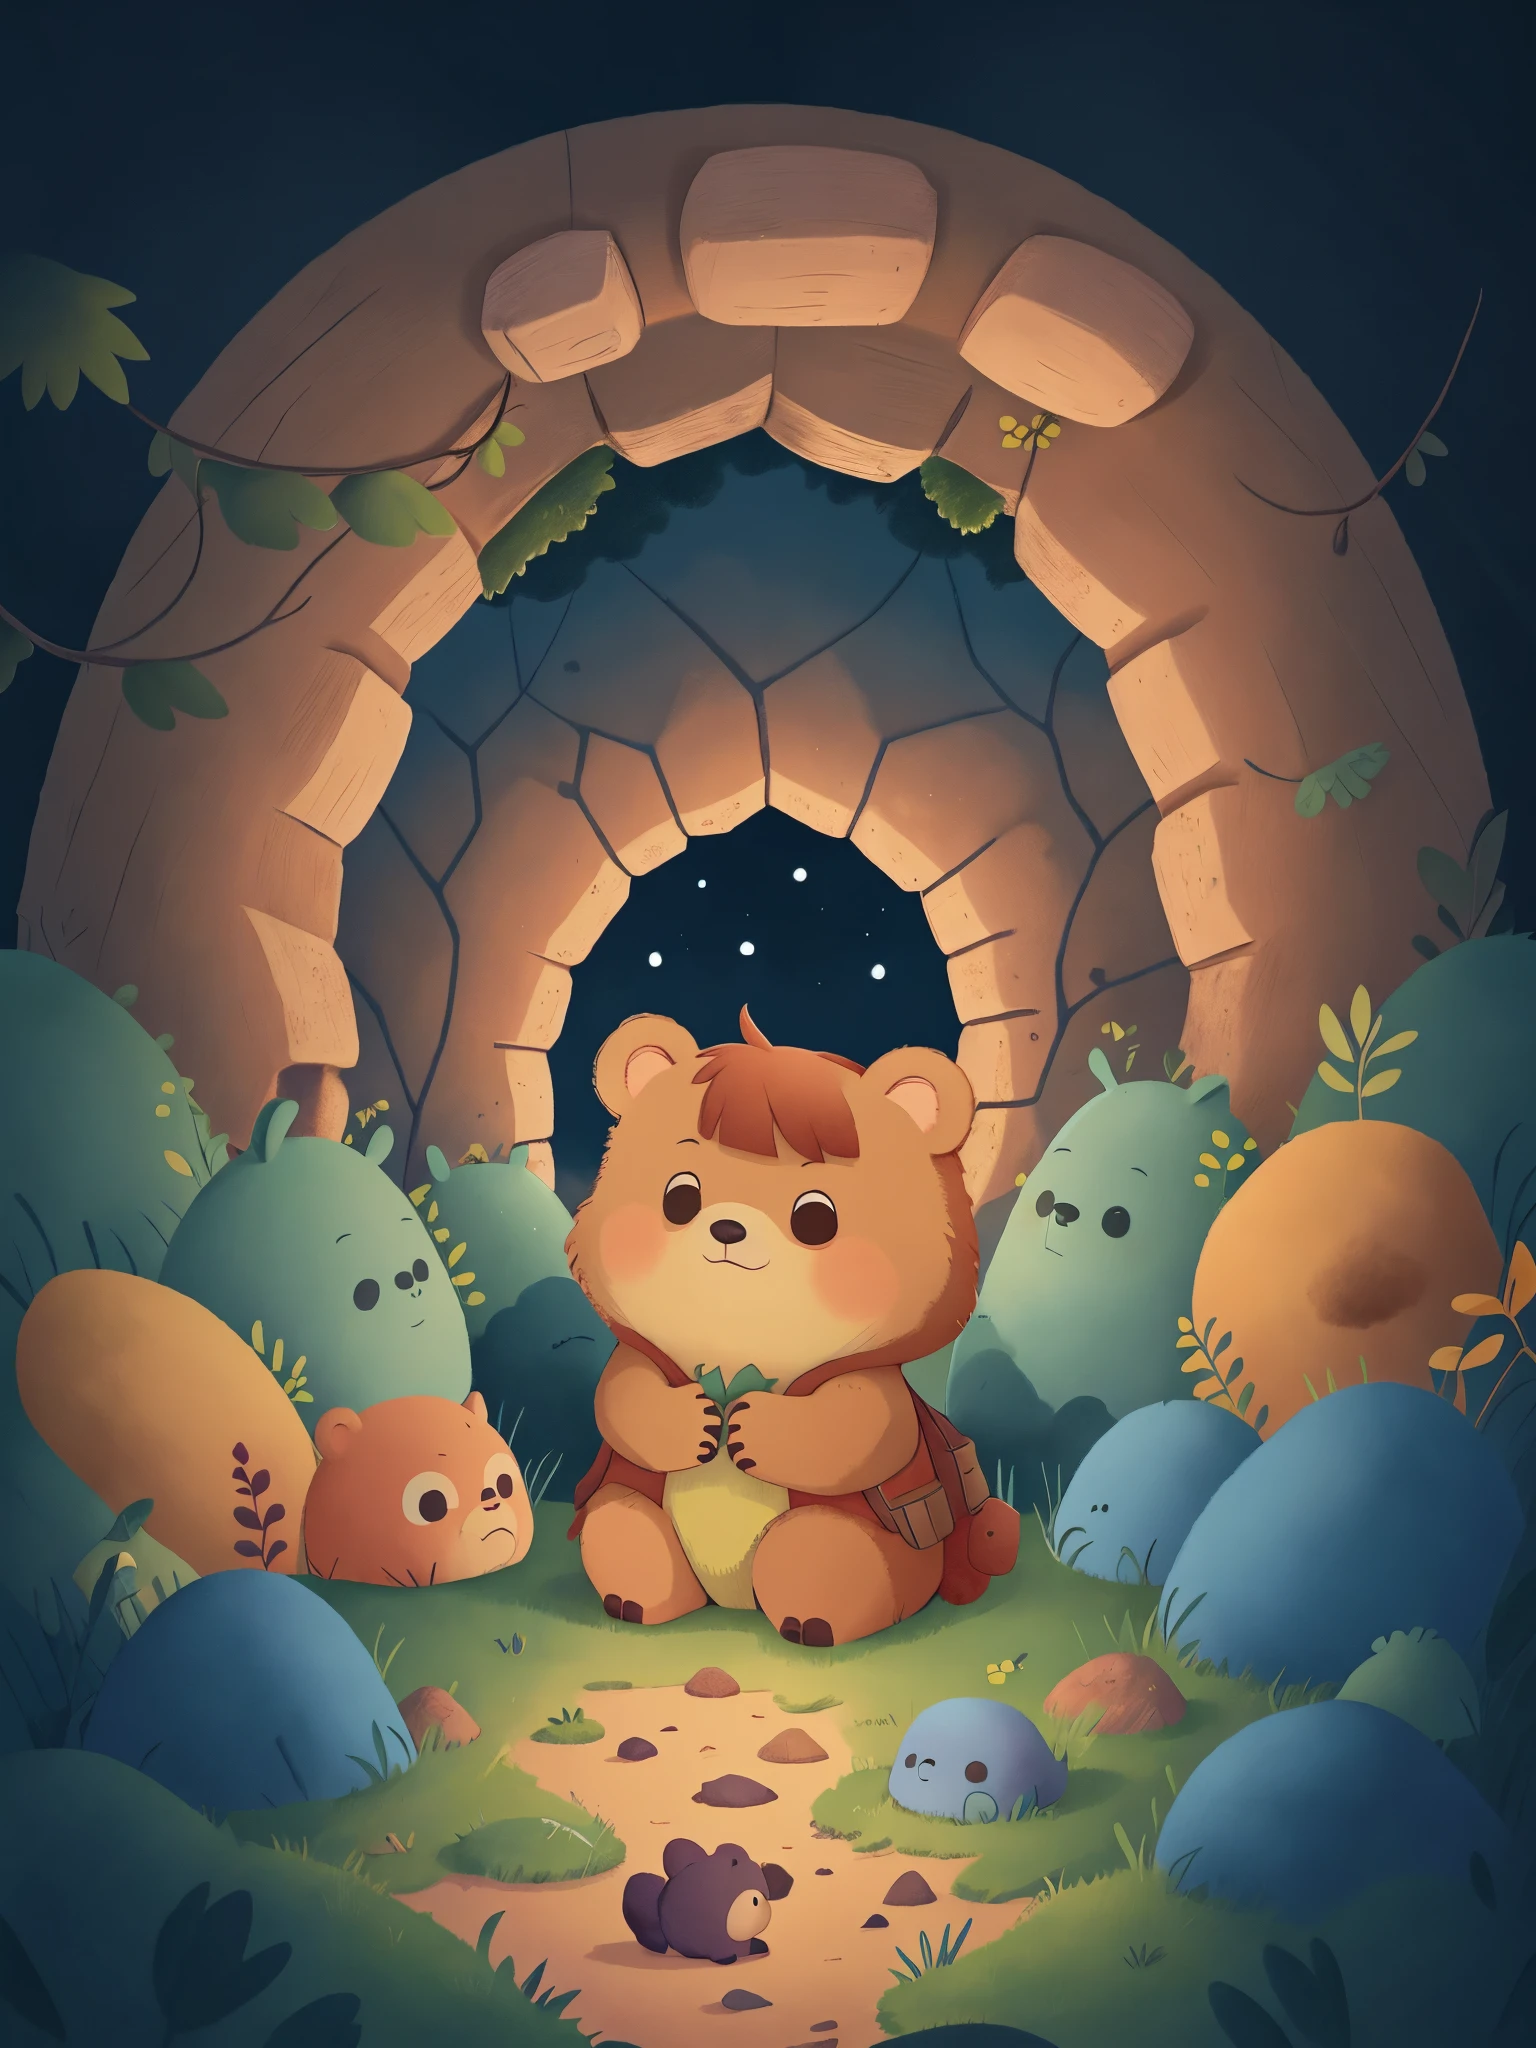 밤이되자，따뜻한 동굴에 껴안고 있는 작은 곰，바깥 하늘에는 별이 가득하다，